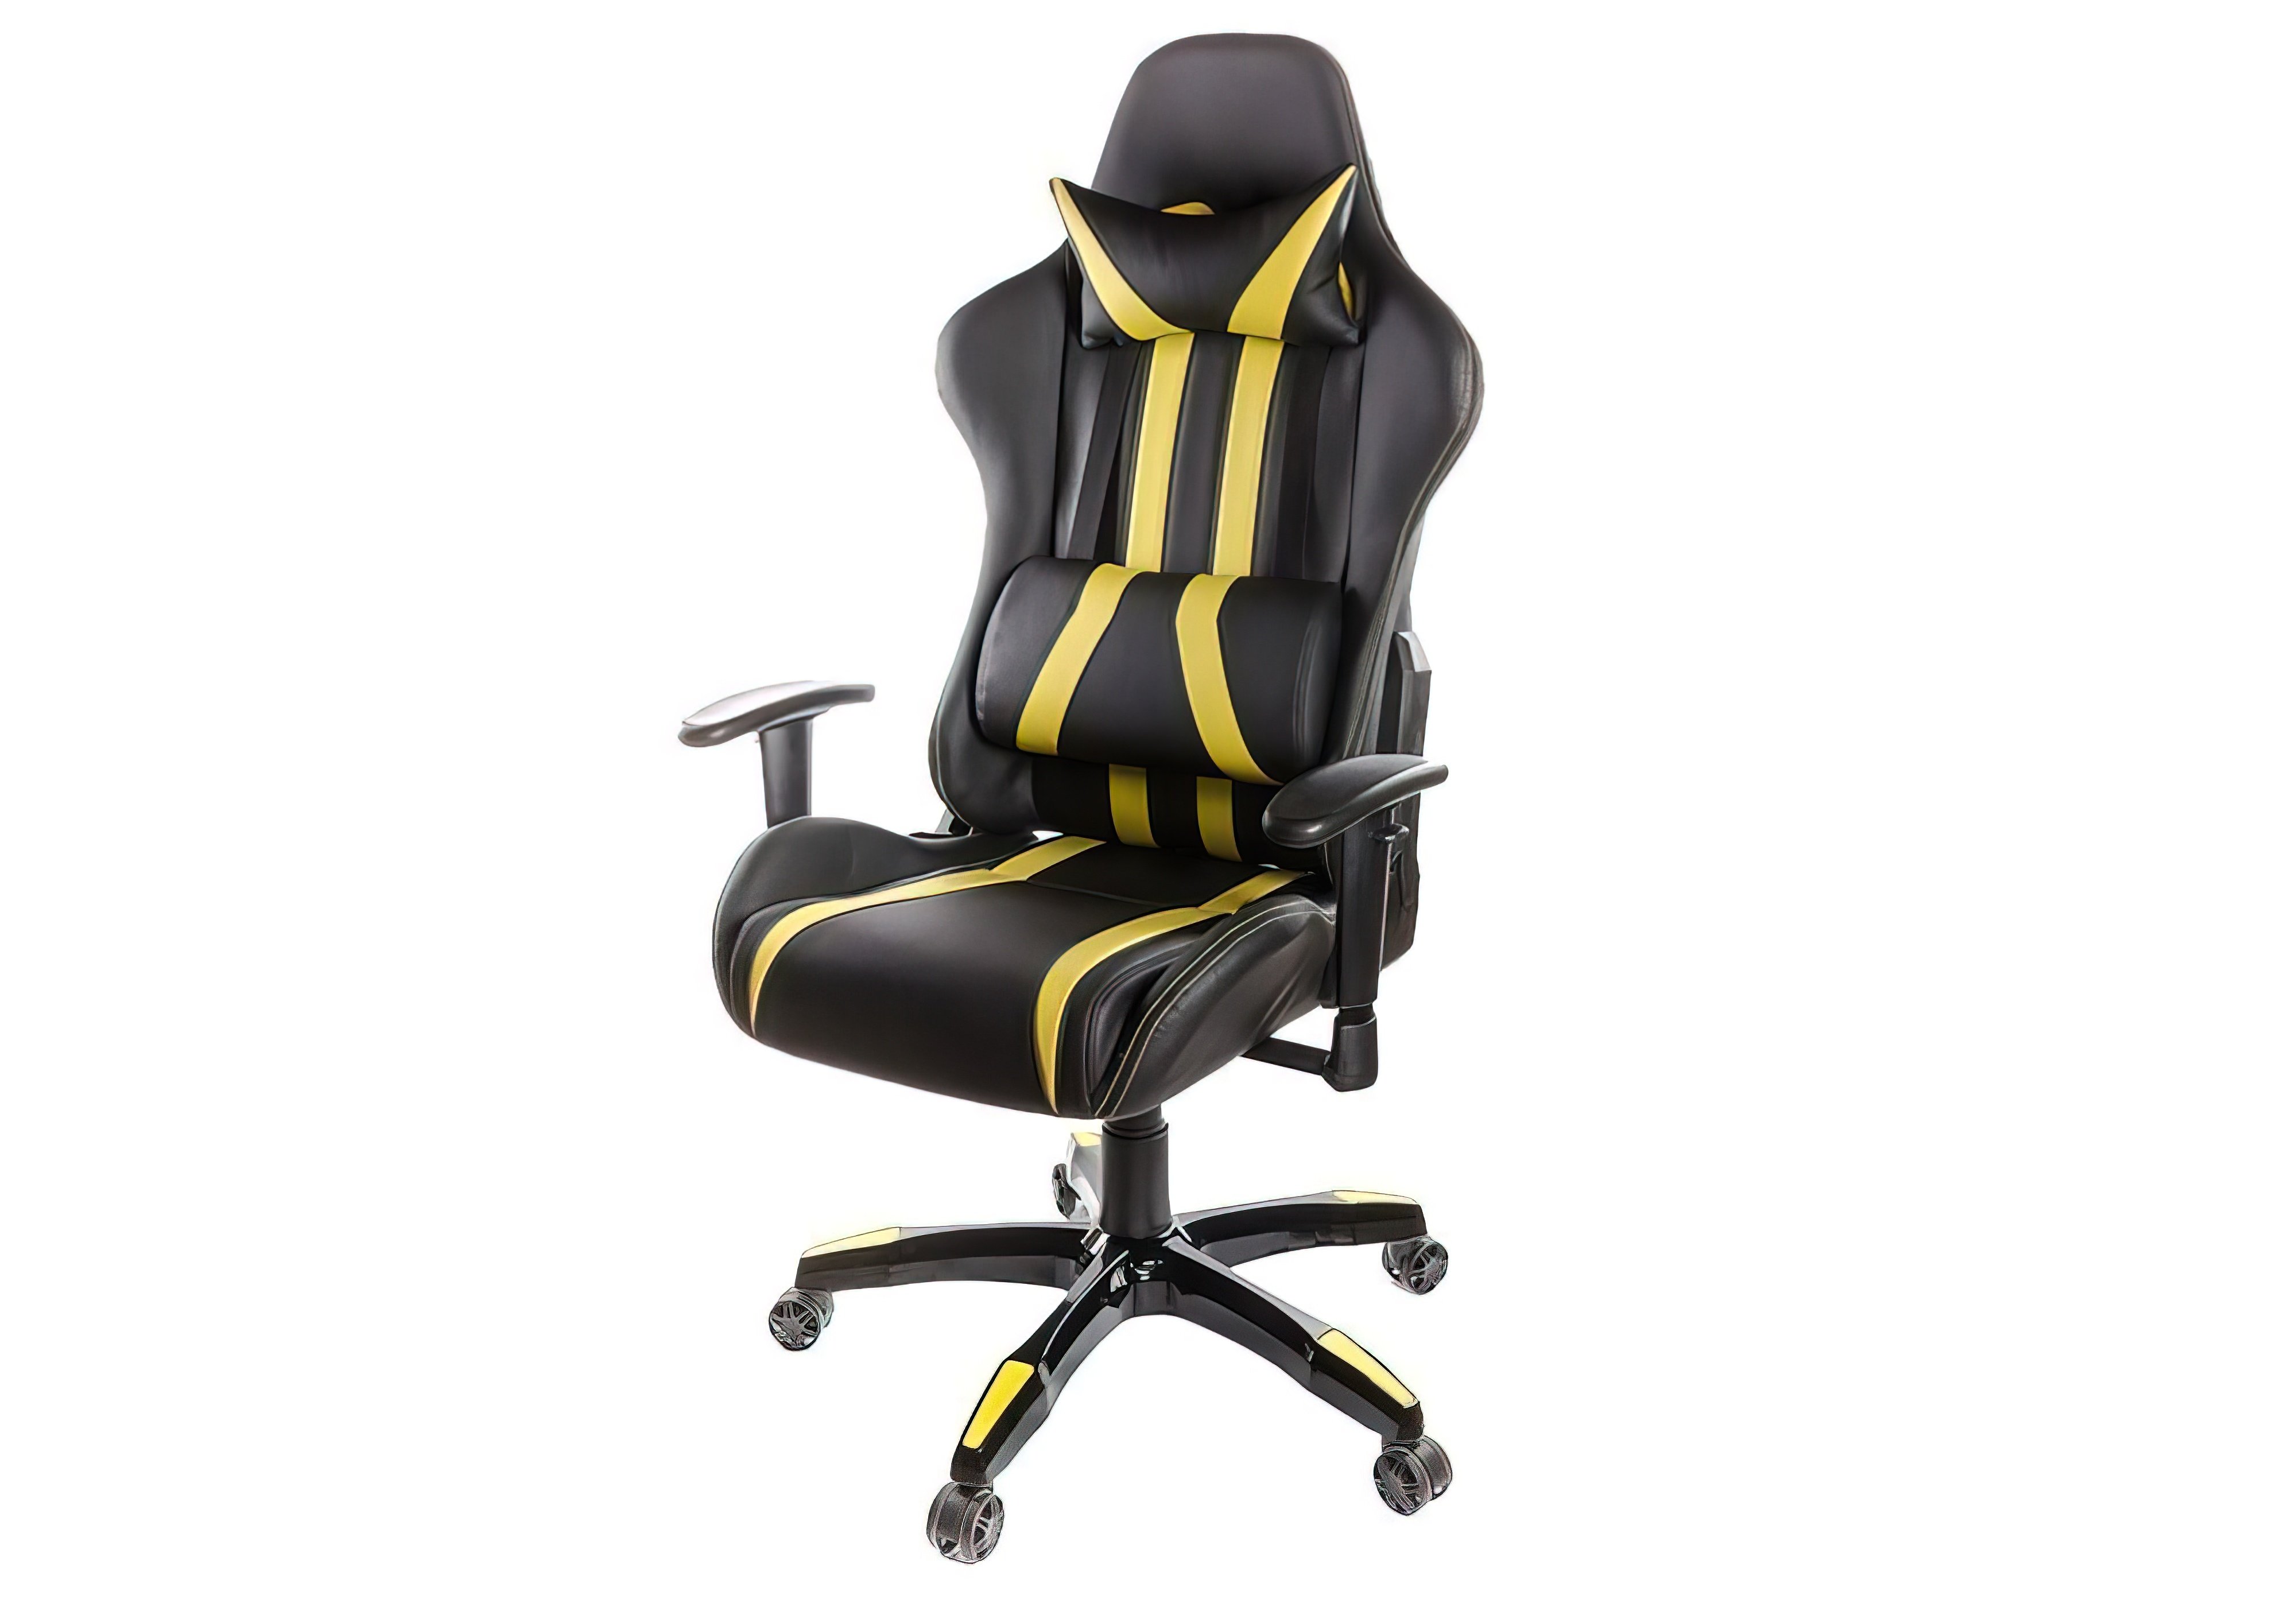  Купить Игровые и геймерские кресла Кресло "Стрик" Verona